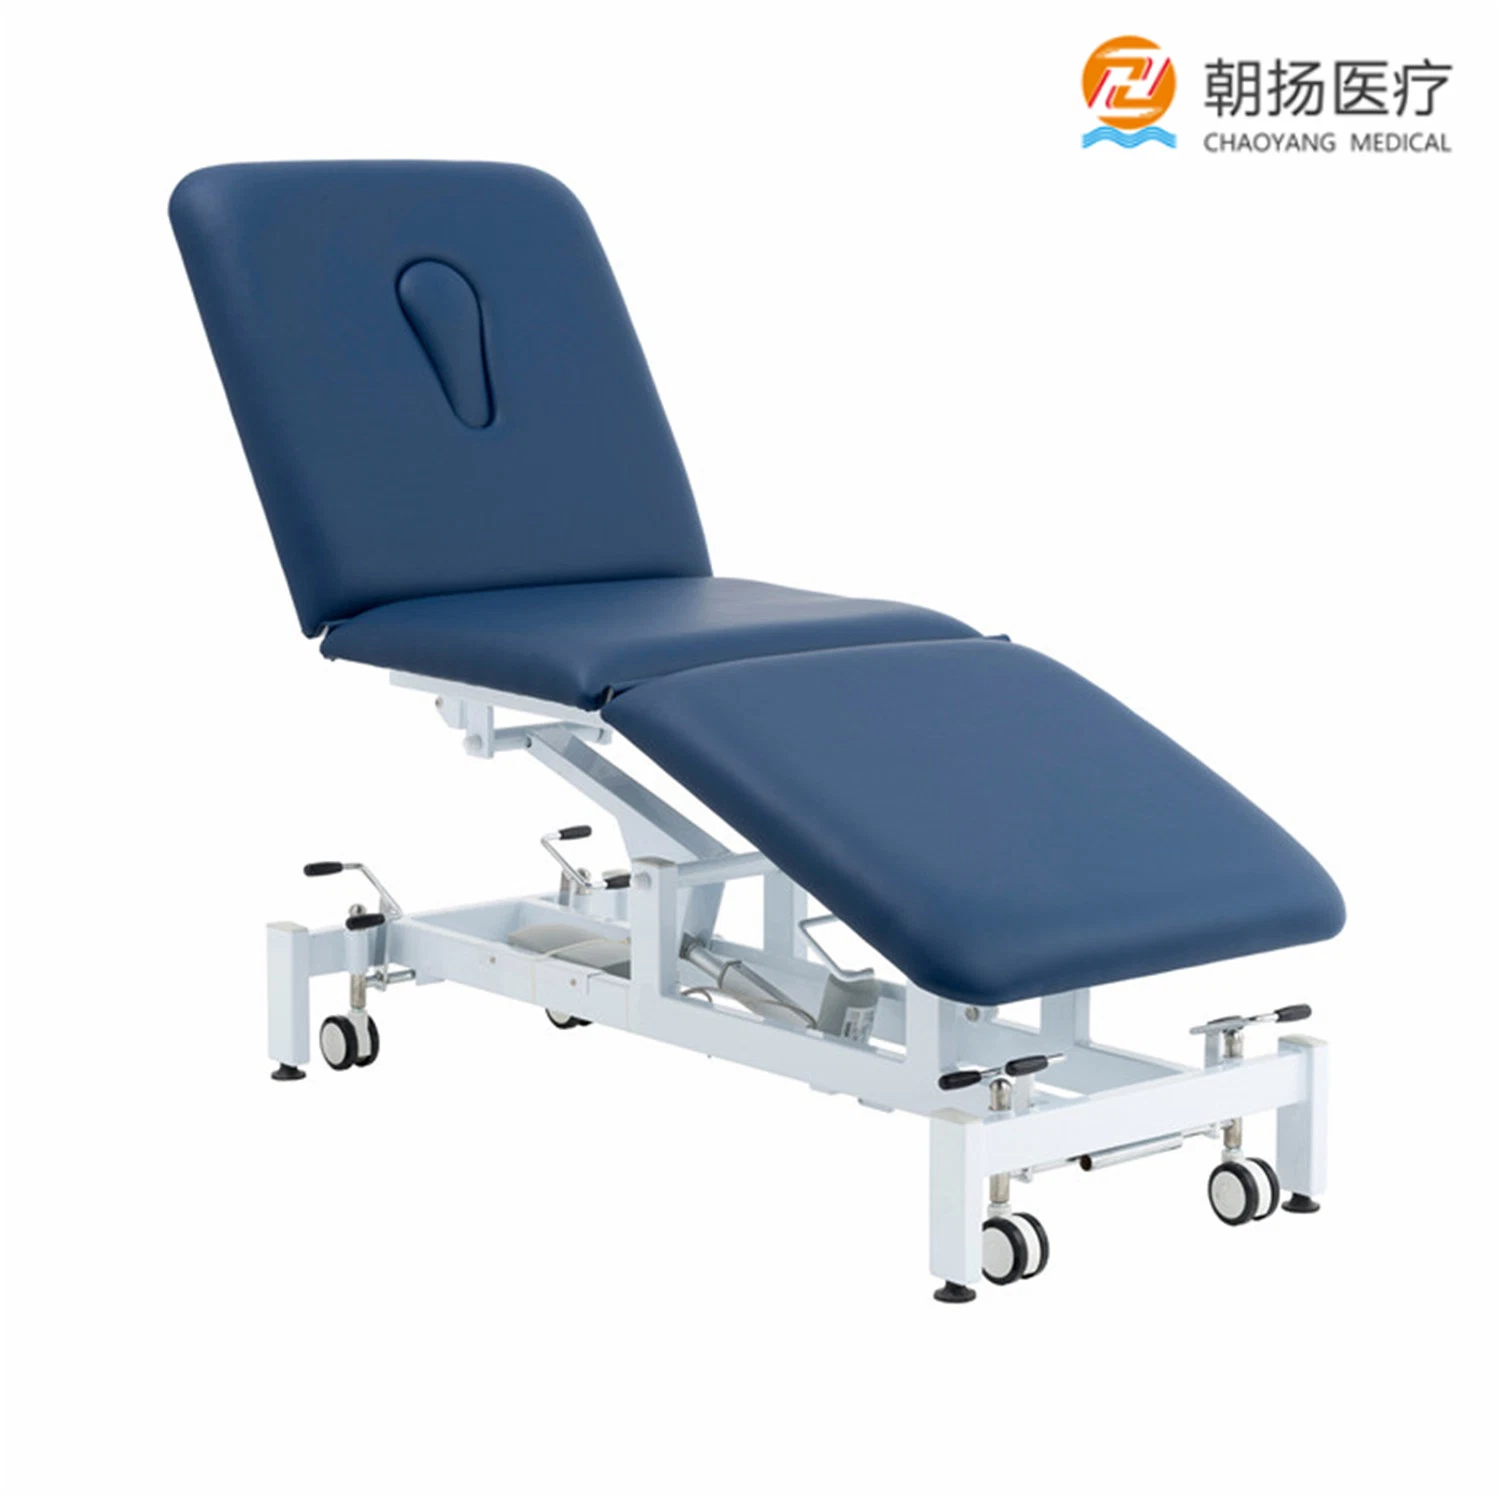 Cama eléctrica para clínica de spa, deporte y fisioterapia. Mesa de tratamiento y masaje.